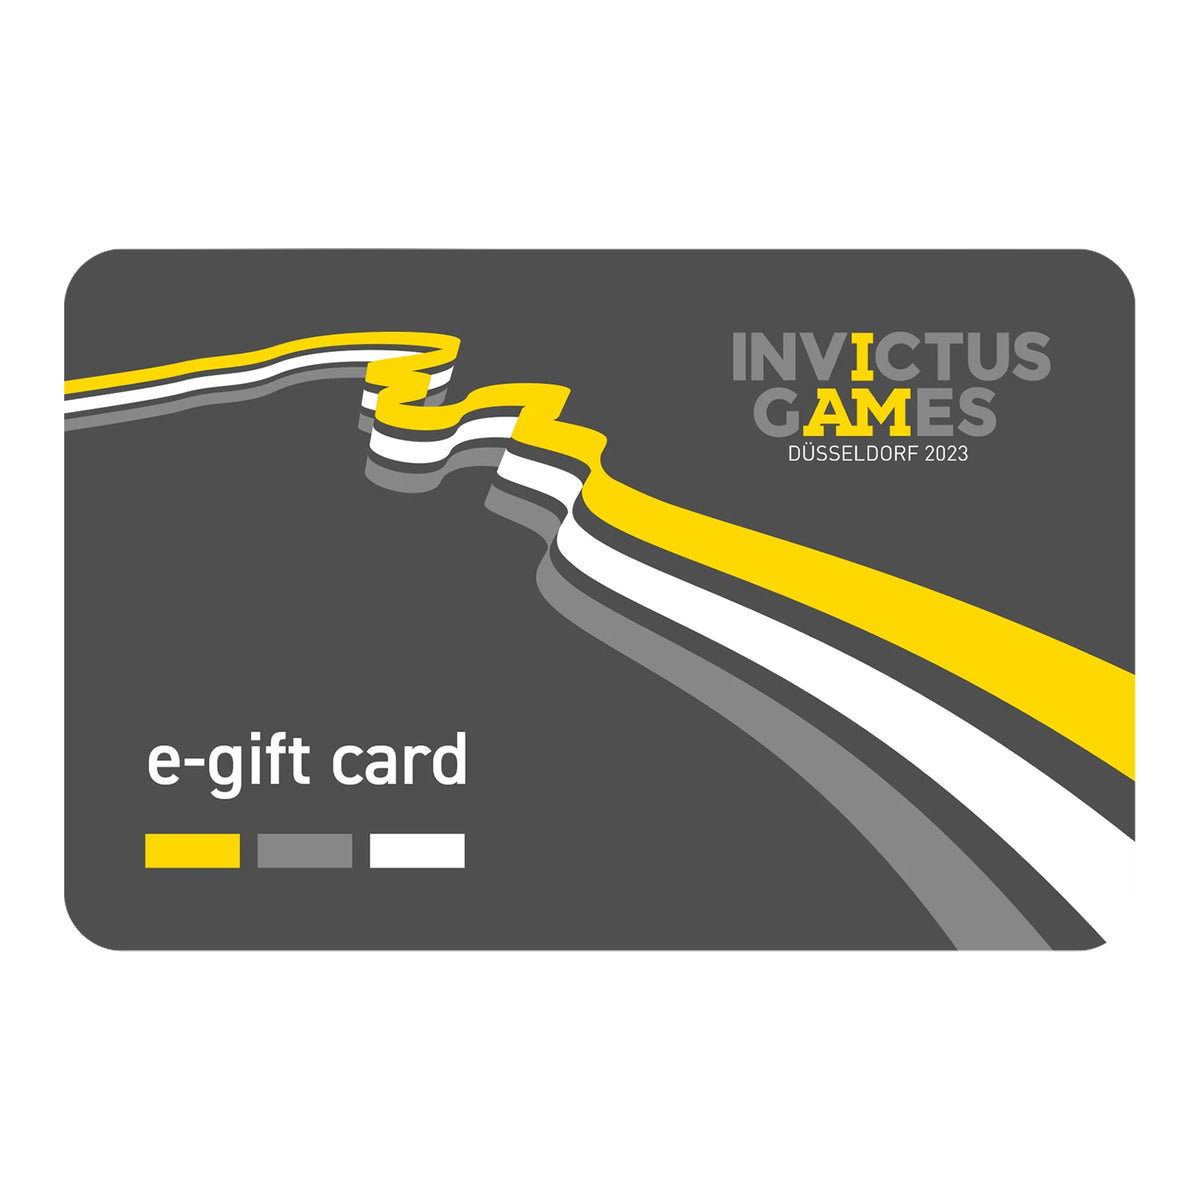 The Invictus Games e-Gift Card